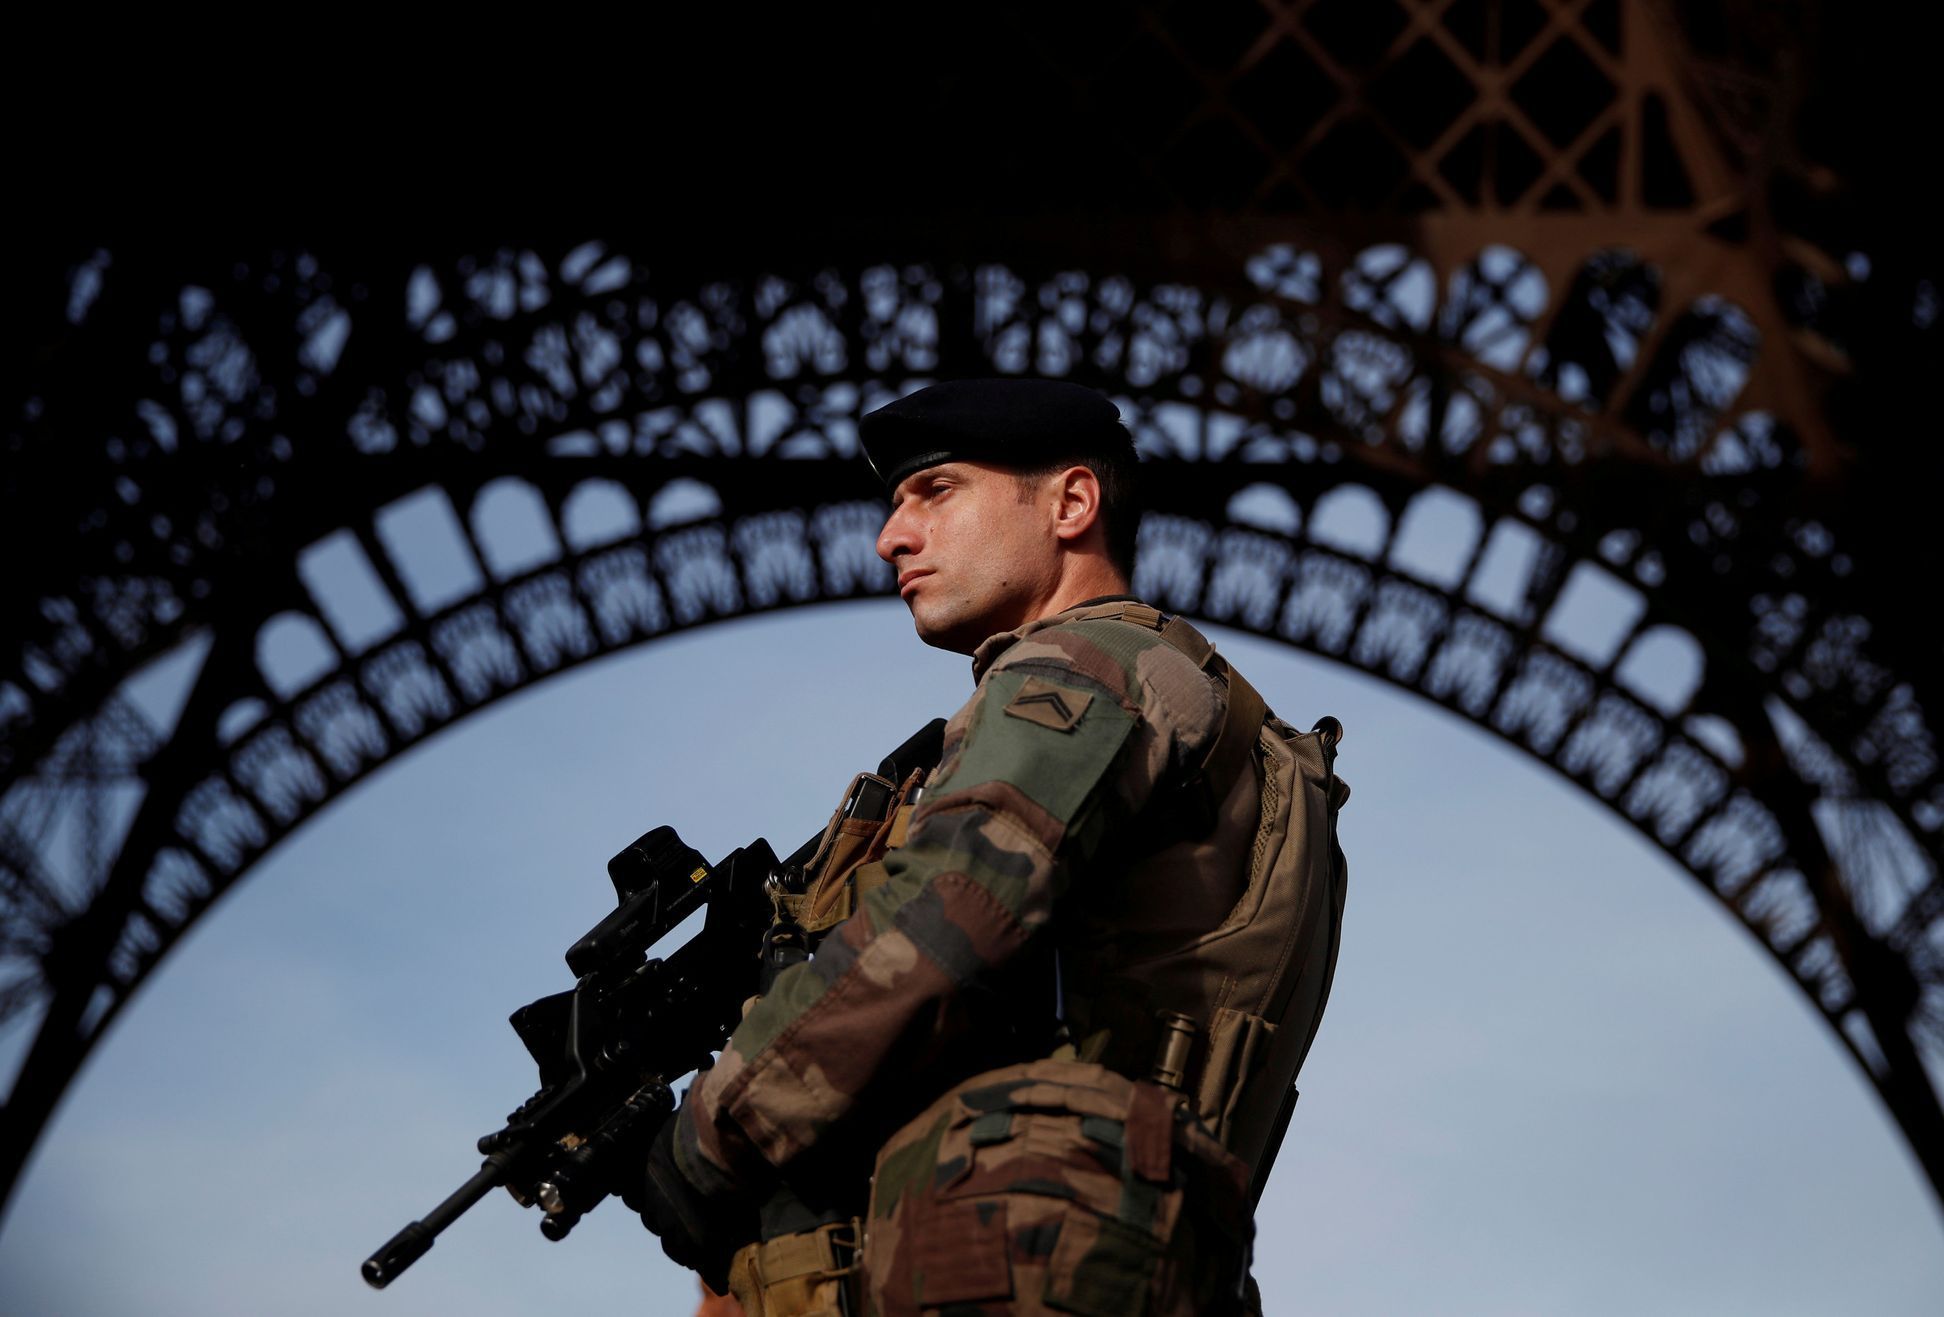 Voják u Eiffelovy věže.